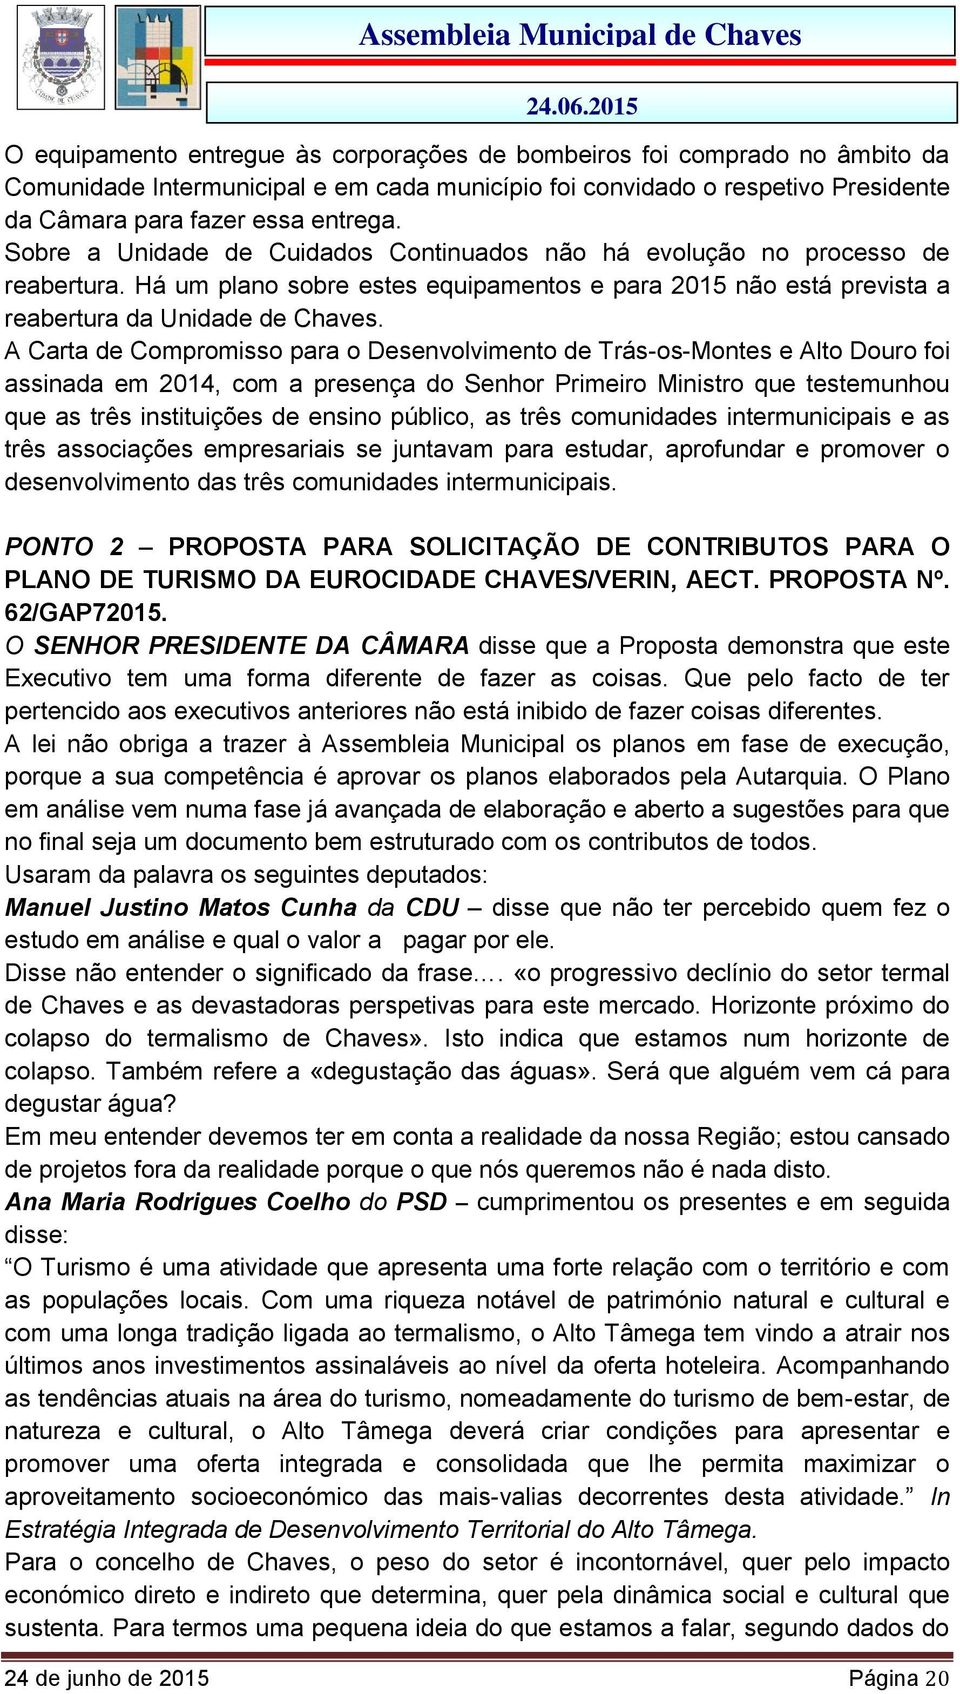 A Carta de Compromisso para o Desenvolvimento de Trás-os-Montes e Alto Douro foi assinada em 2014, com a presença do Senhor Primeiro Ministro que testemunhou que as três instituições de ensino